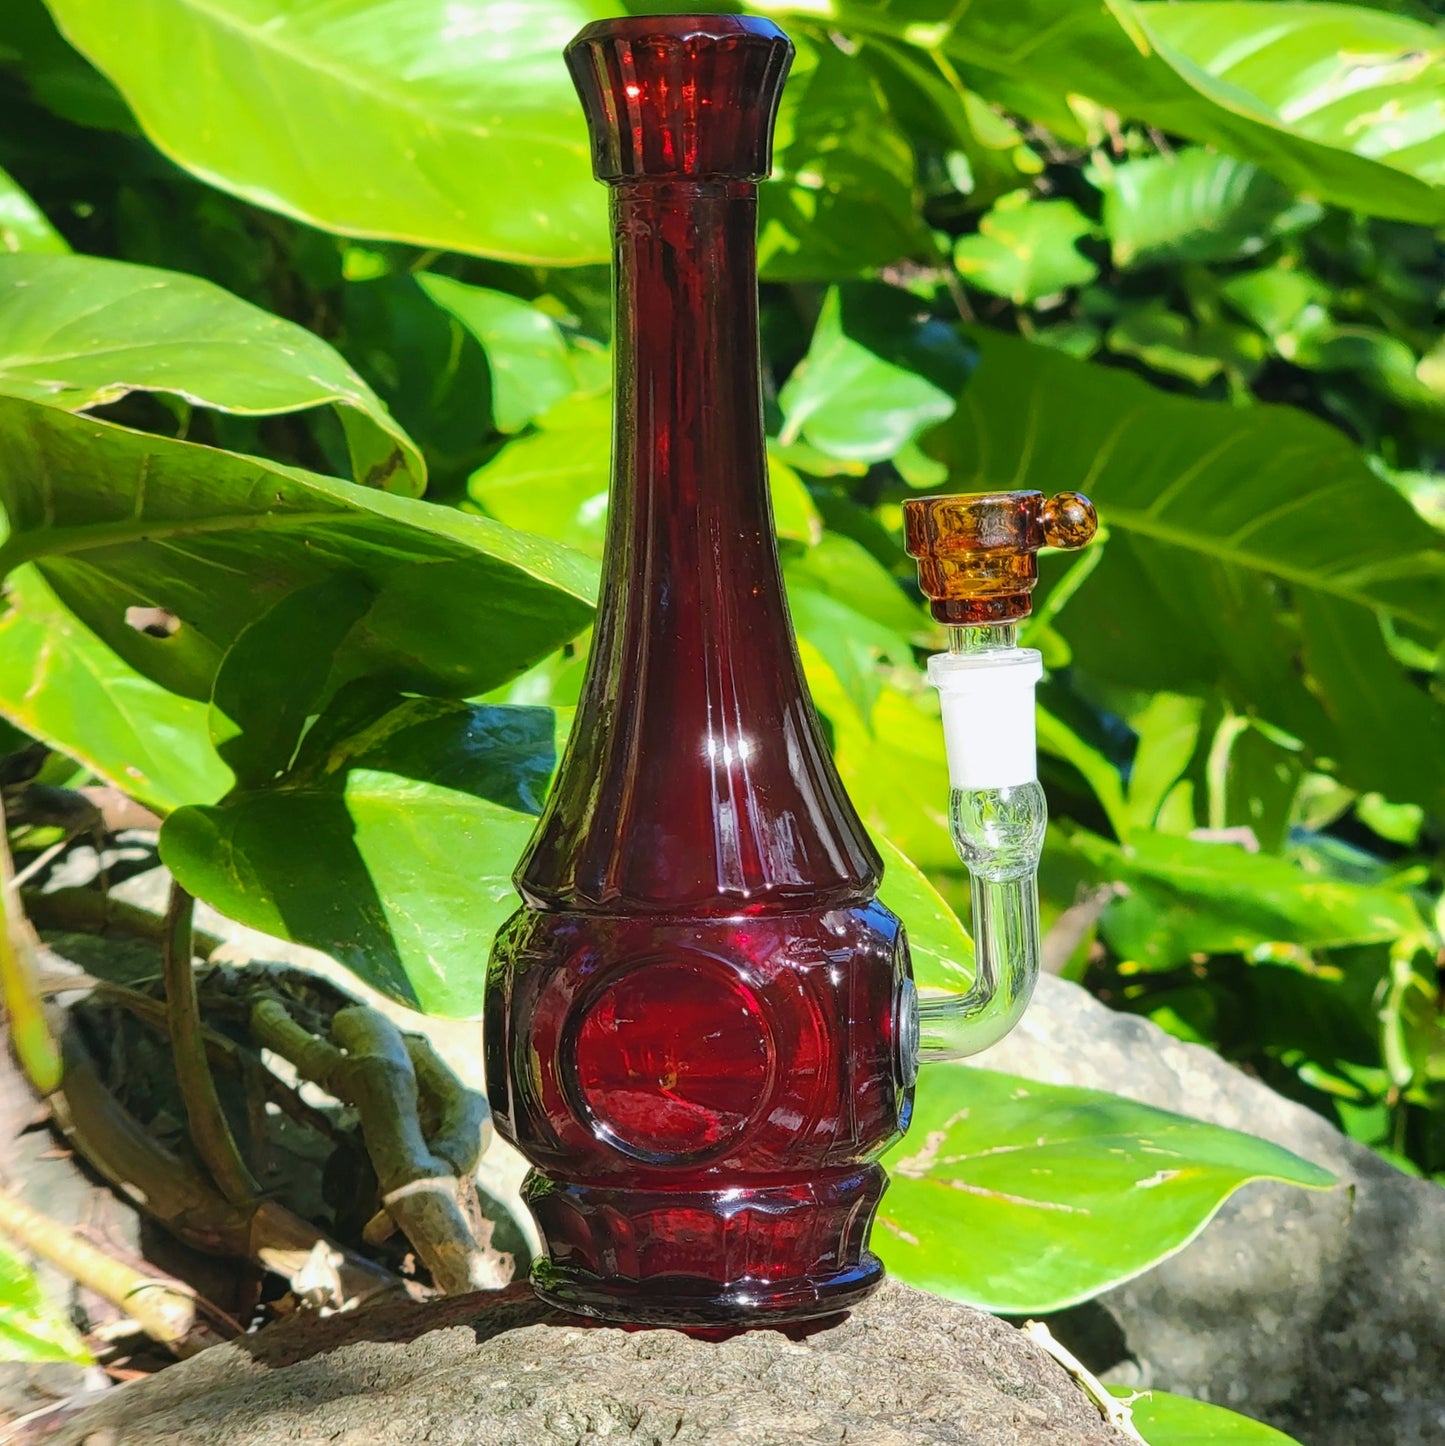 "Crystalline Garnet" Vintage Upcycled Pressed Glass Vase Bong